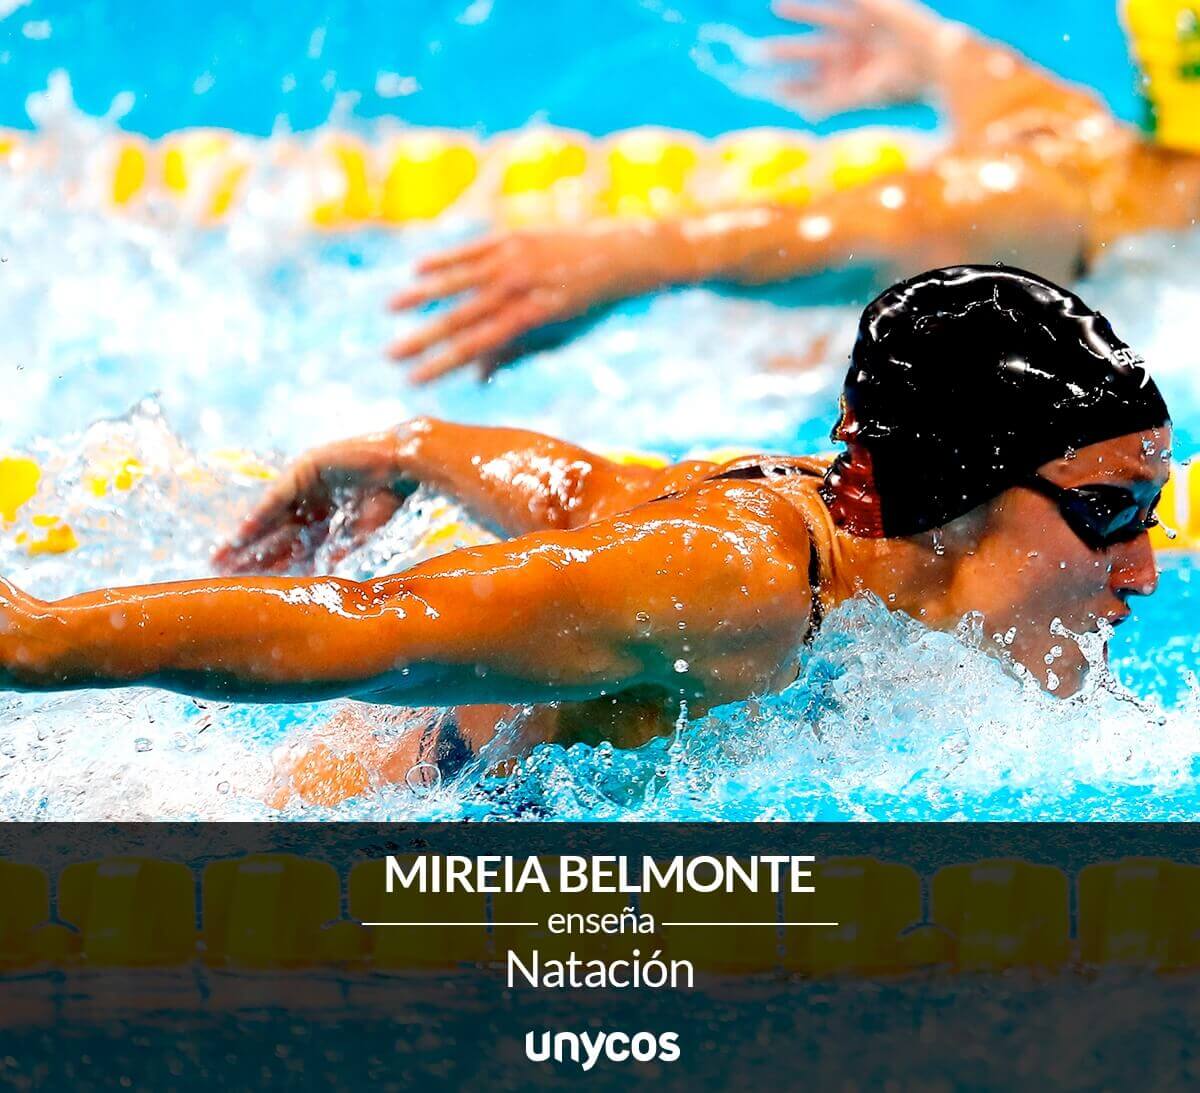 olympian swimmer mireia belmonte